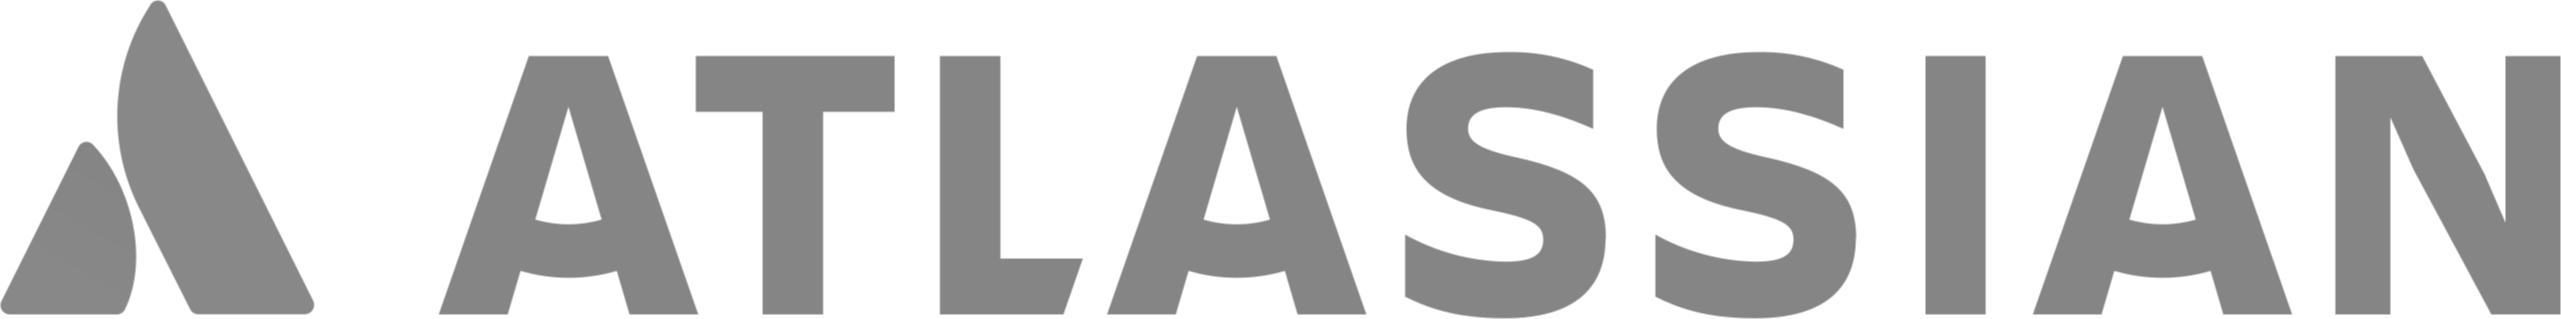 2560px-Atlassian-logo